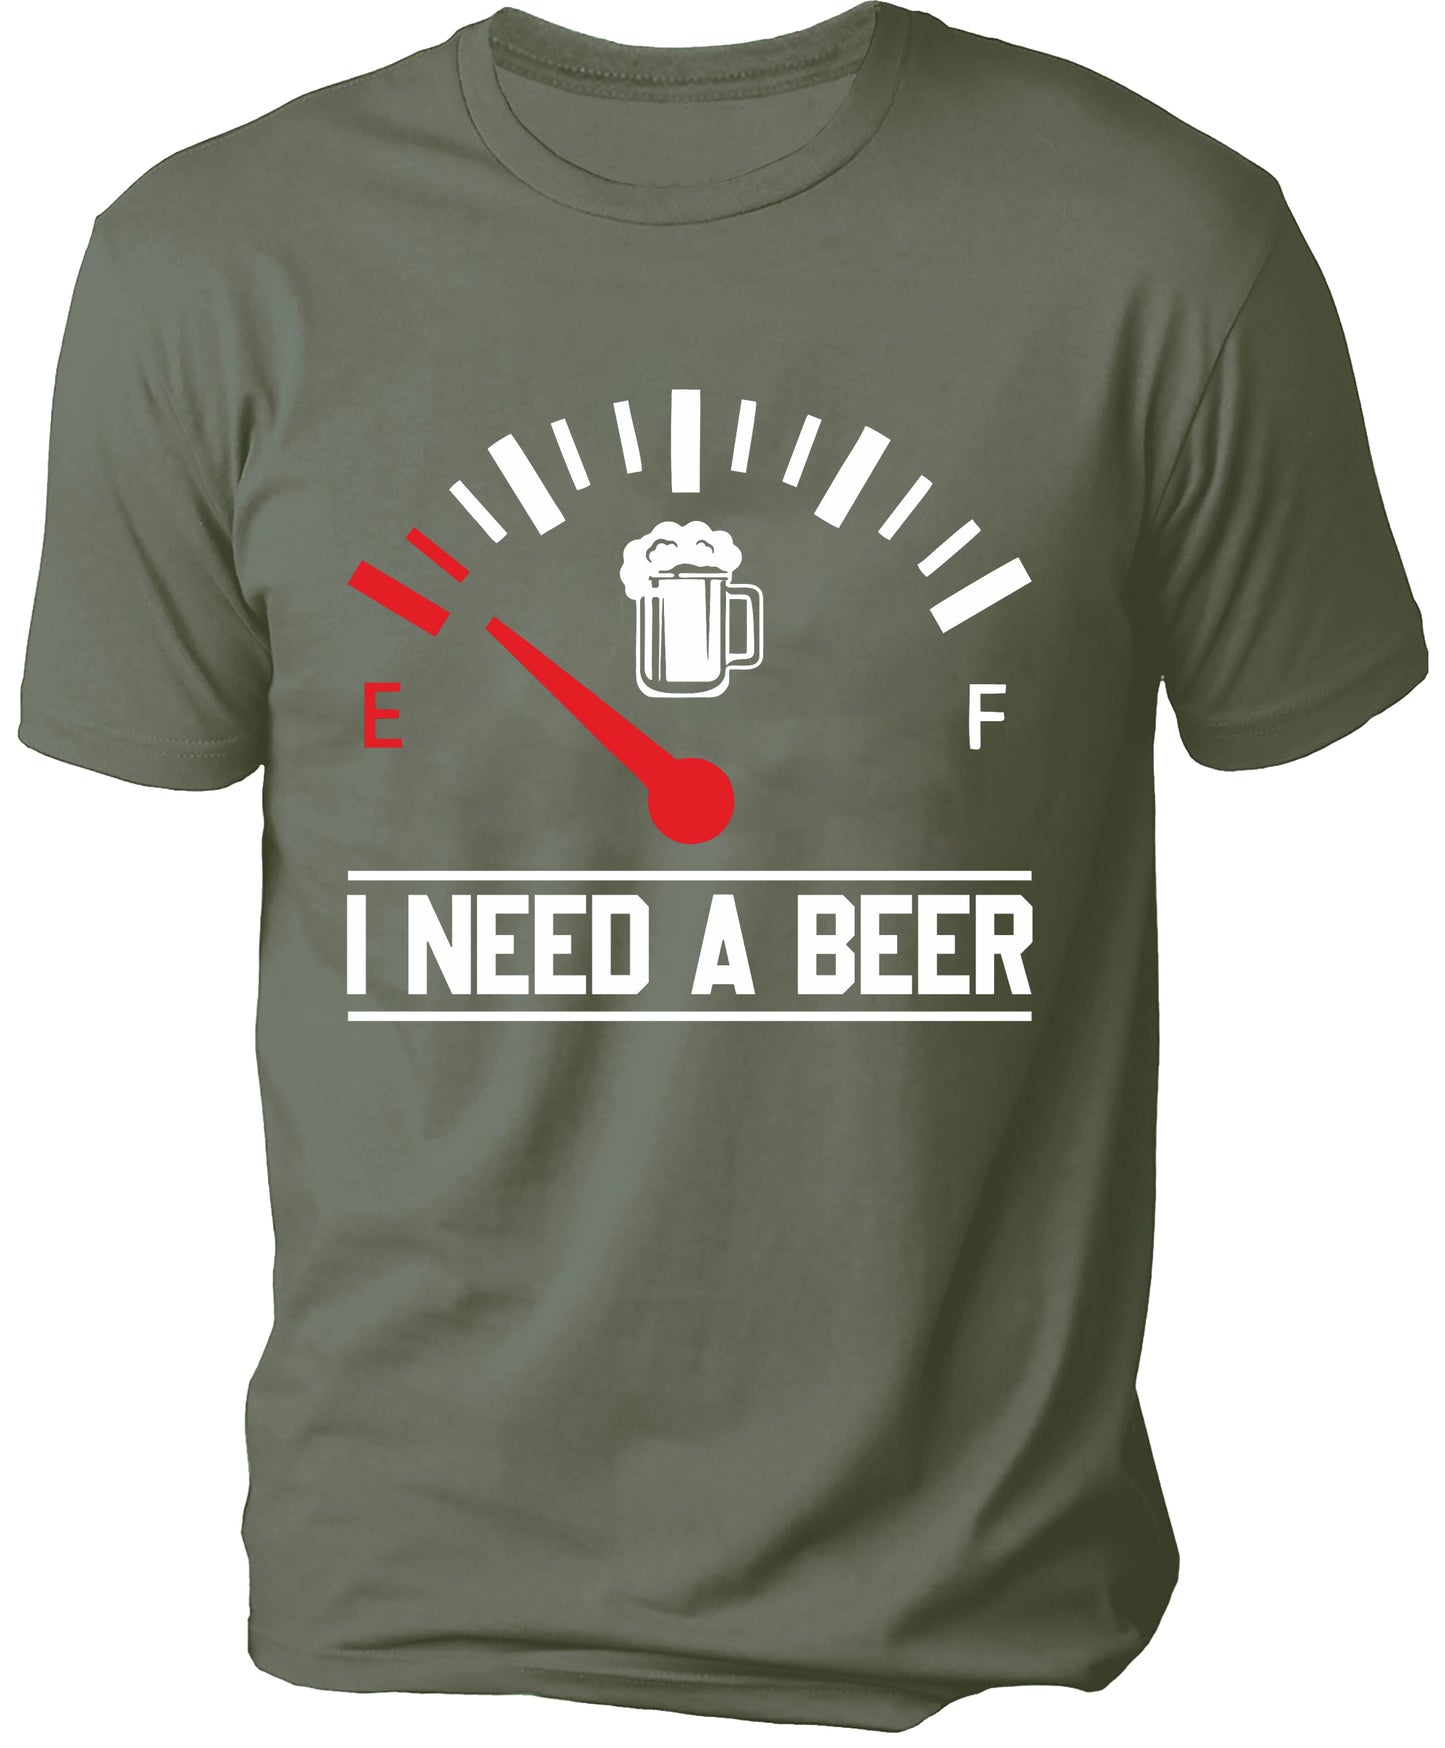 I NEED A BEER Men's T-shirt